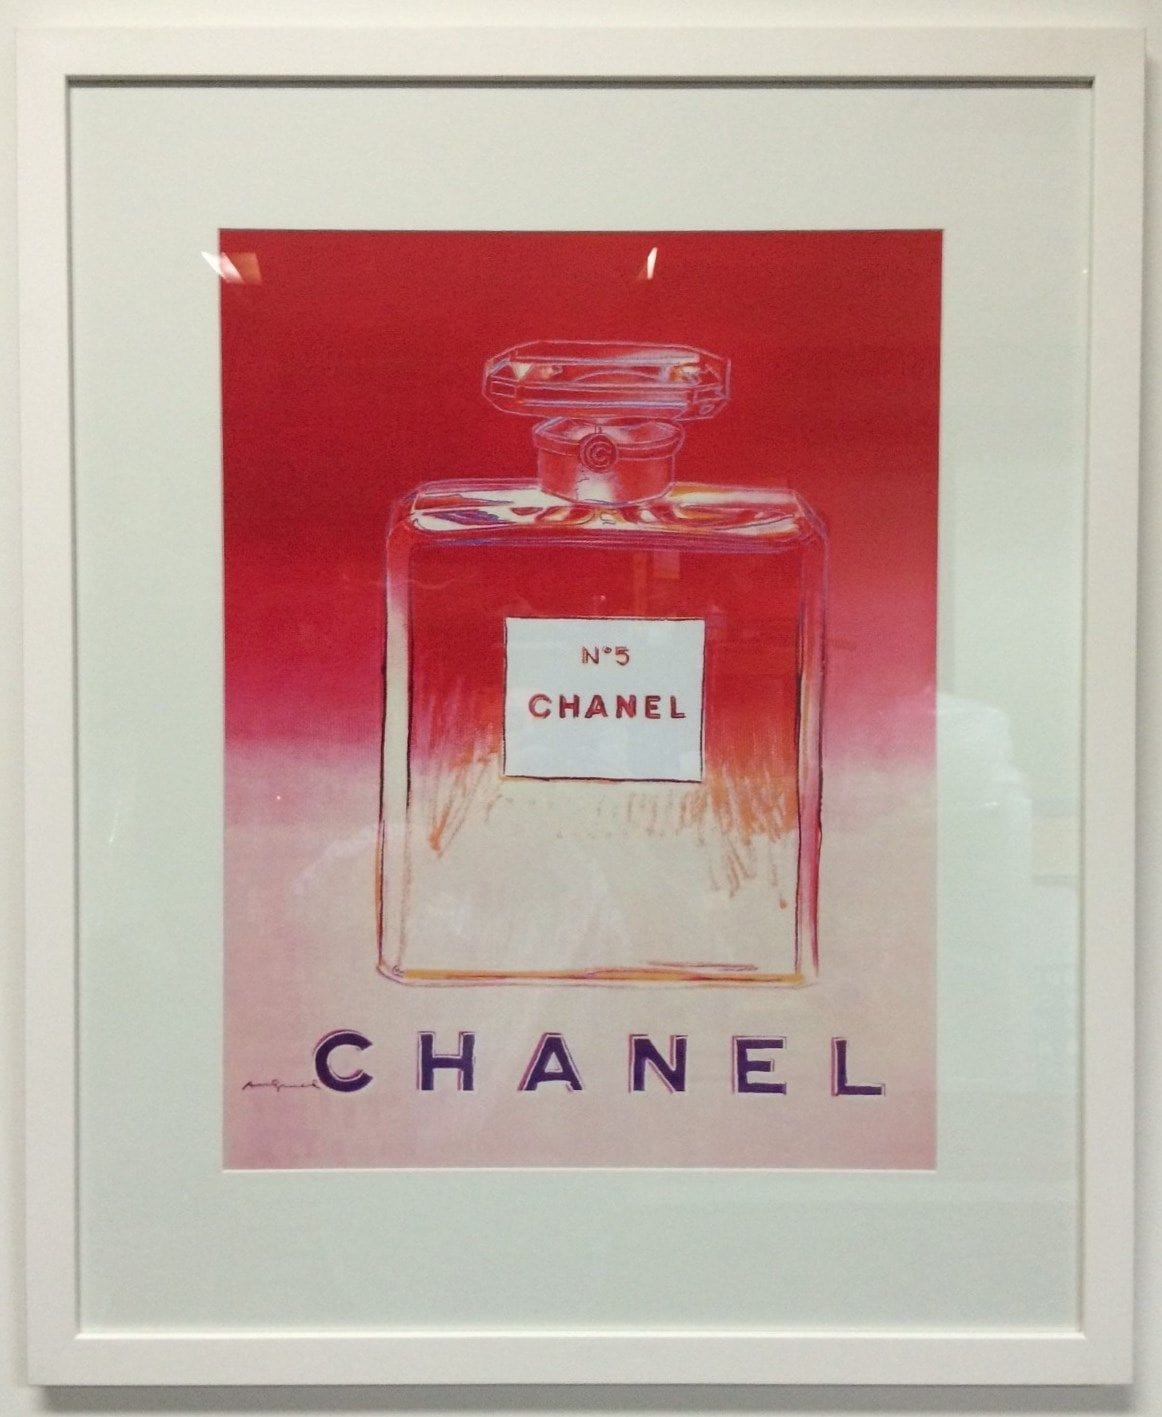 Framed Art, Modern Art, Chanel